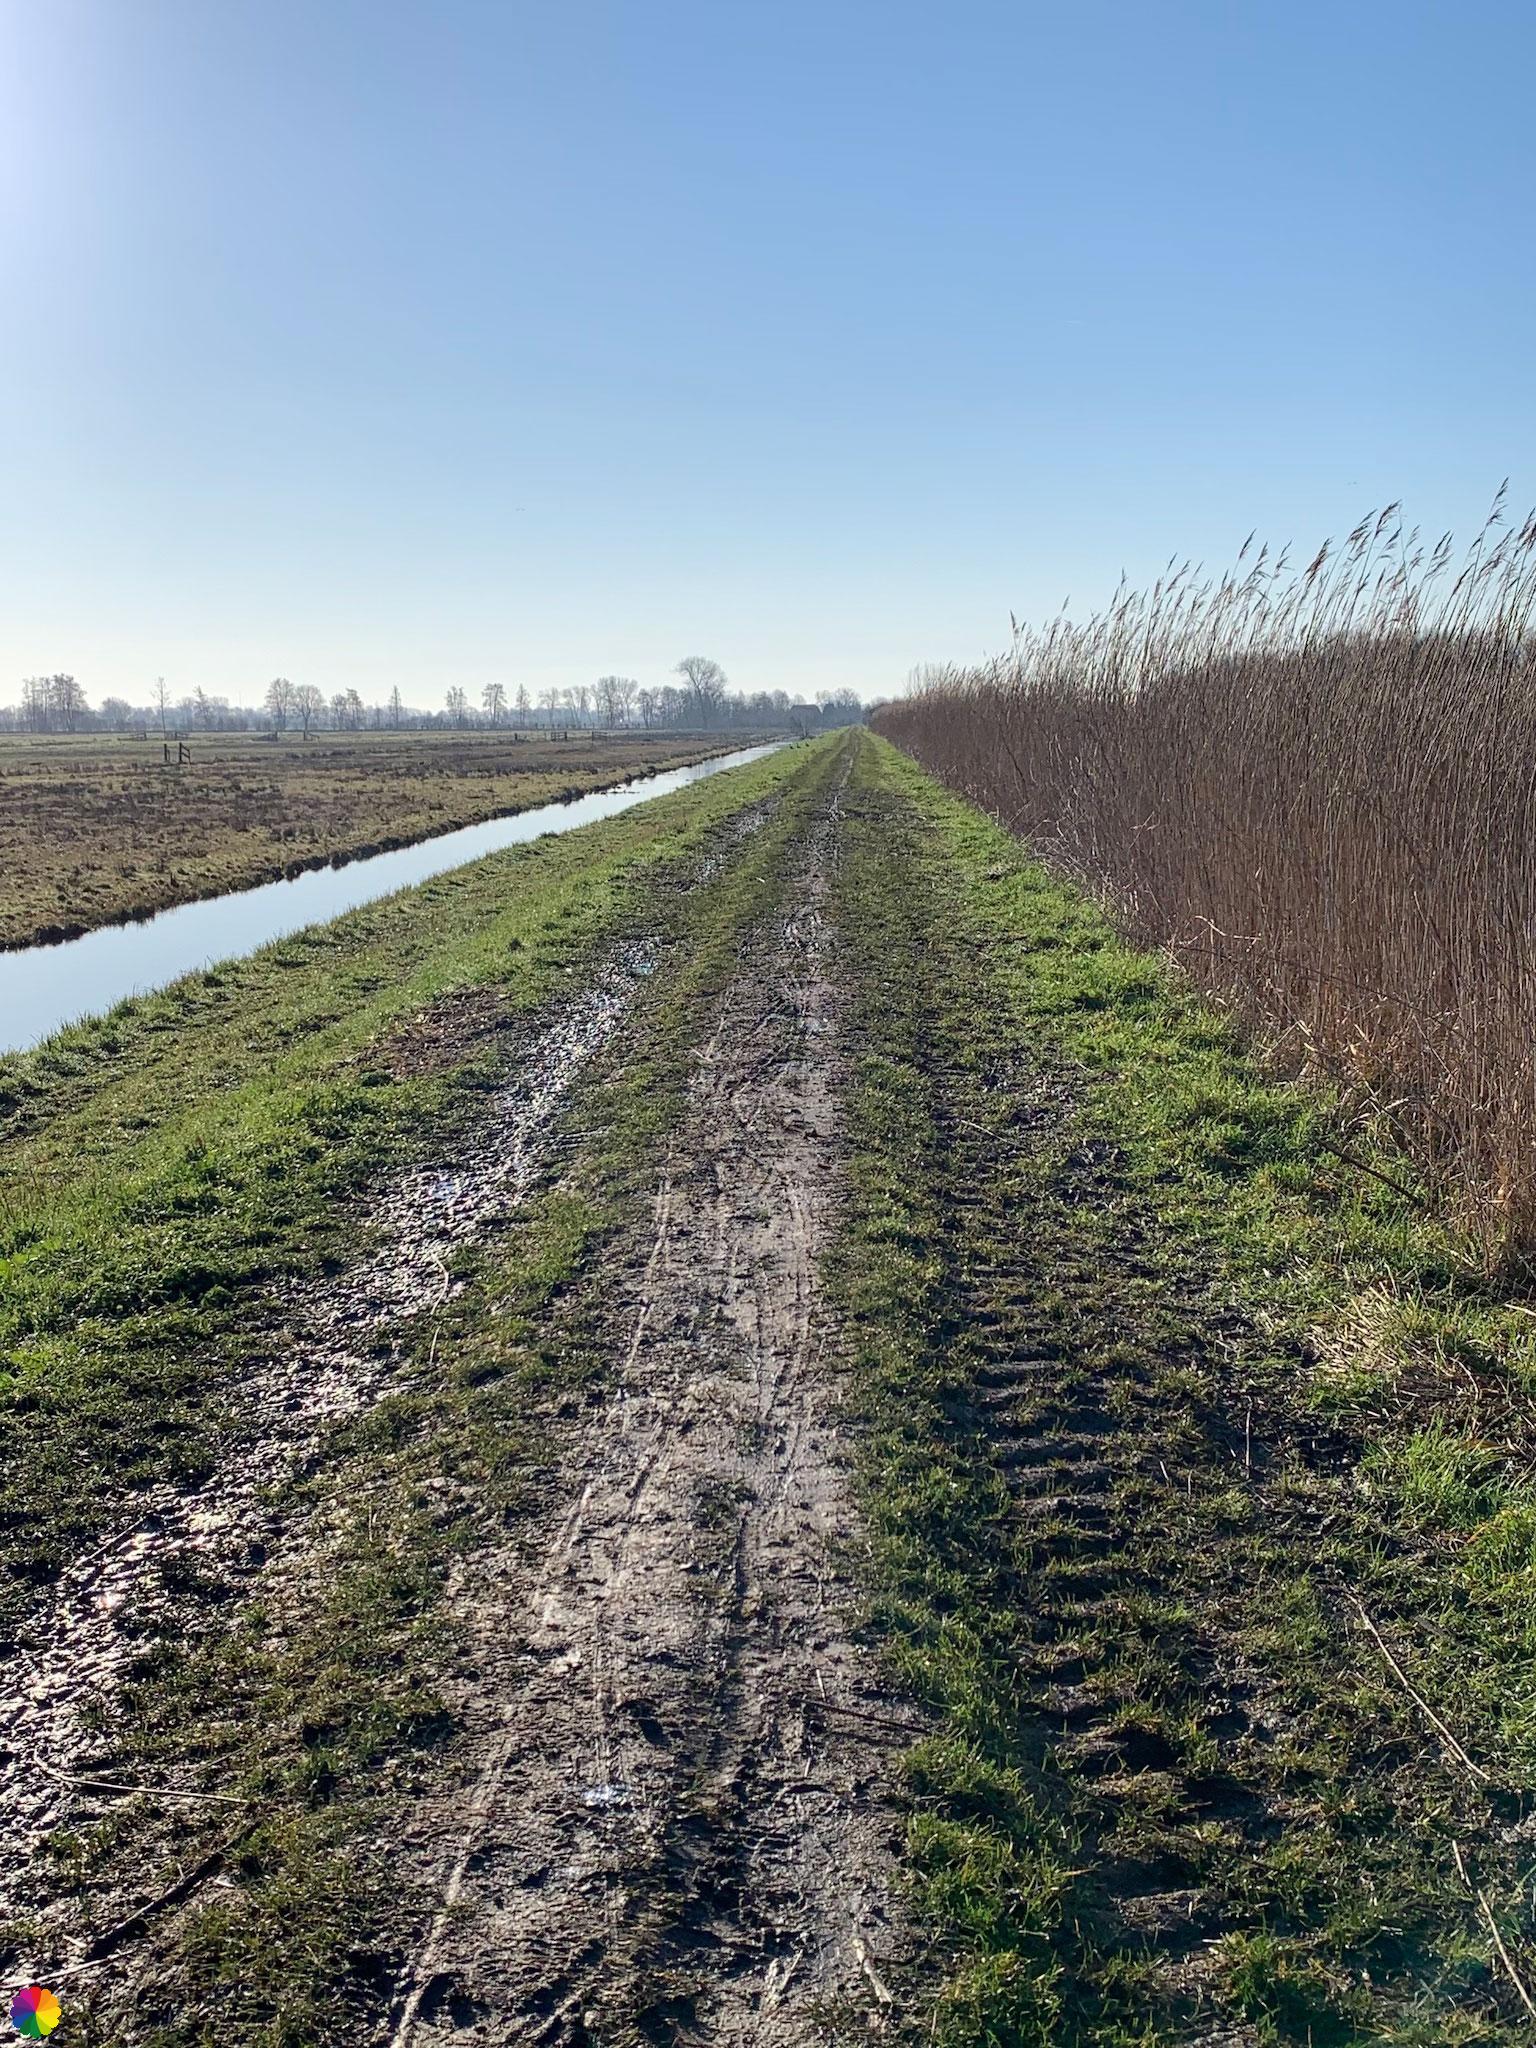 Muddy path at the Zouweboezem